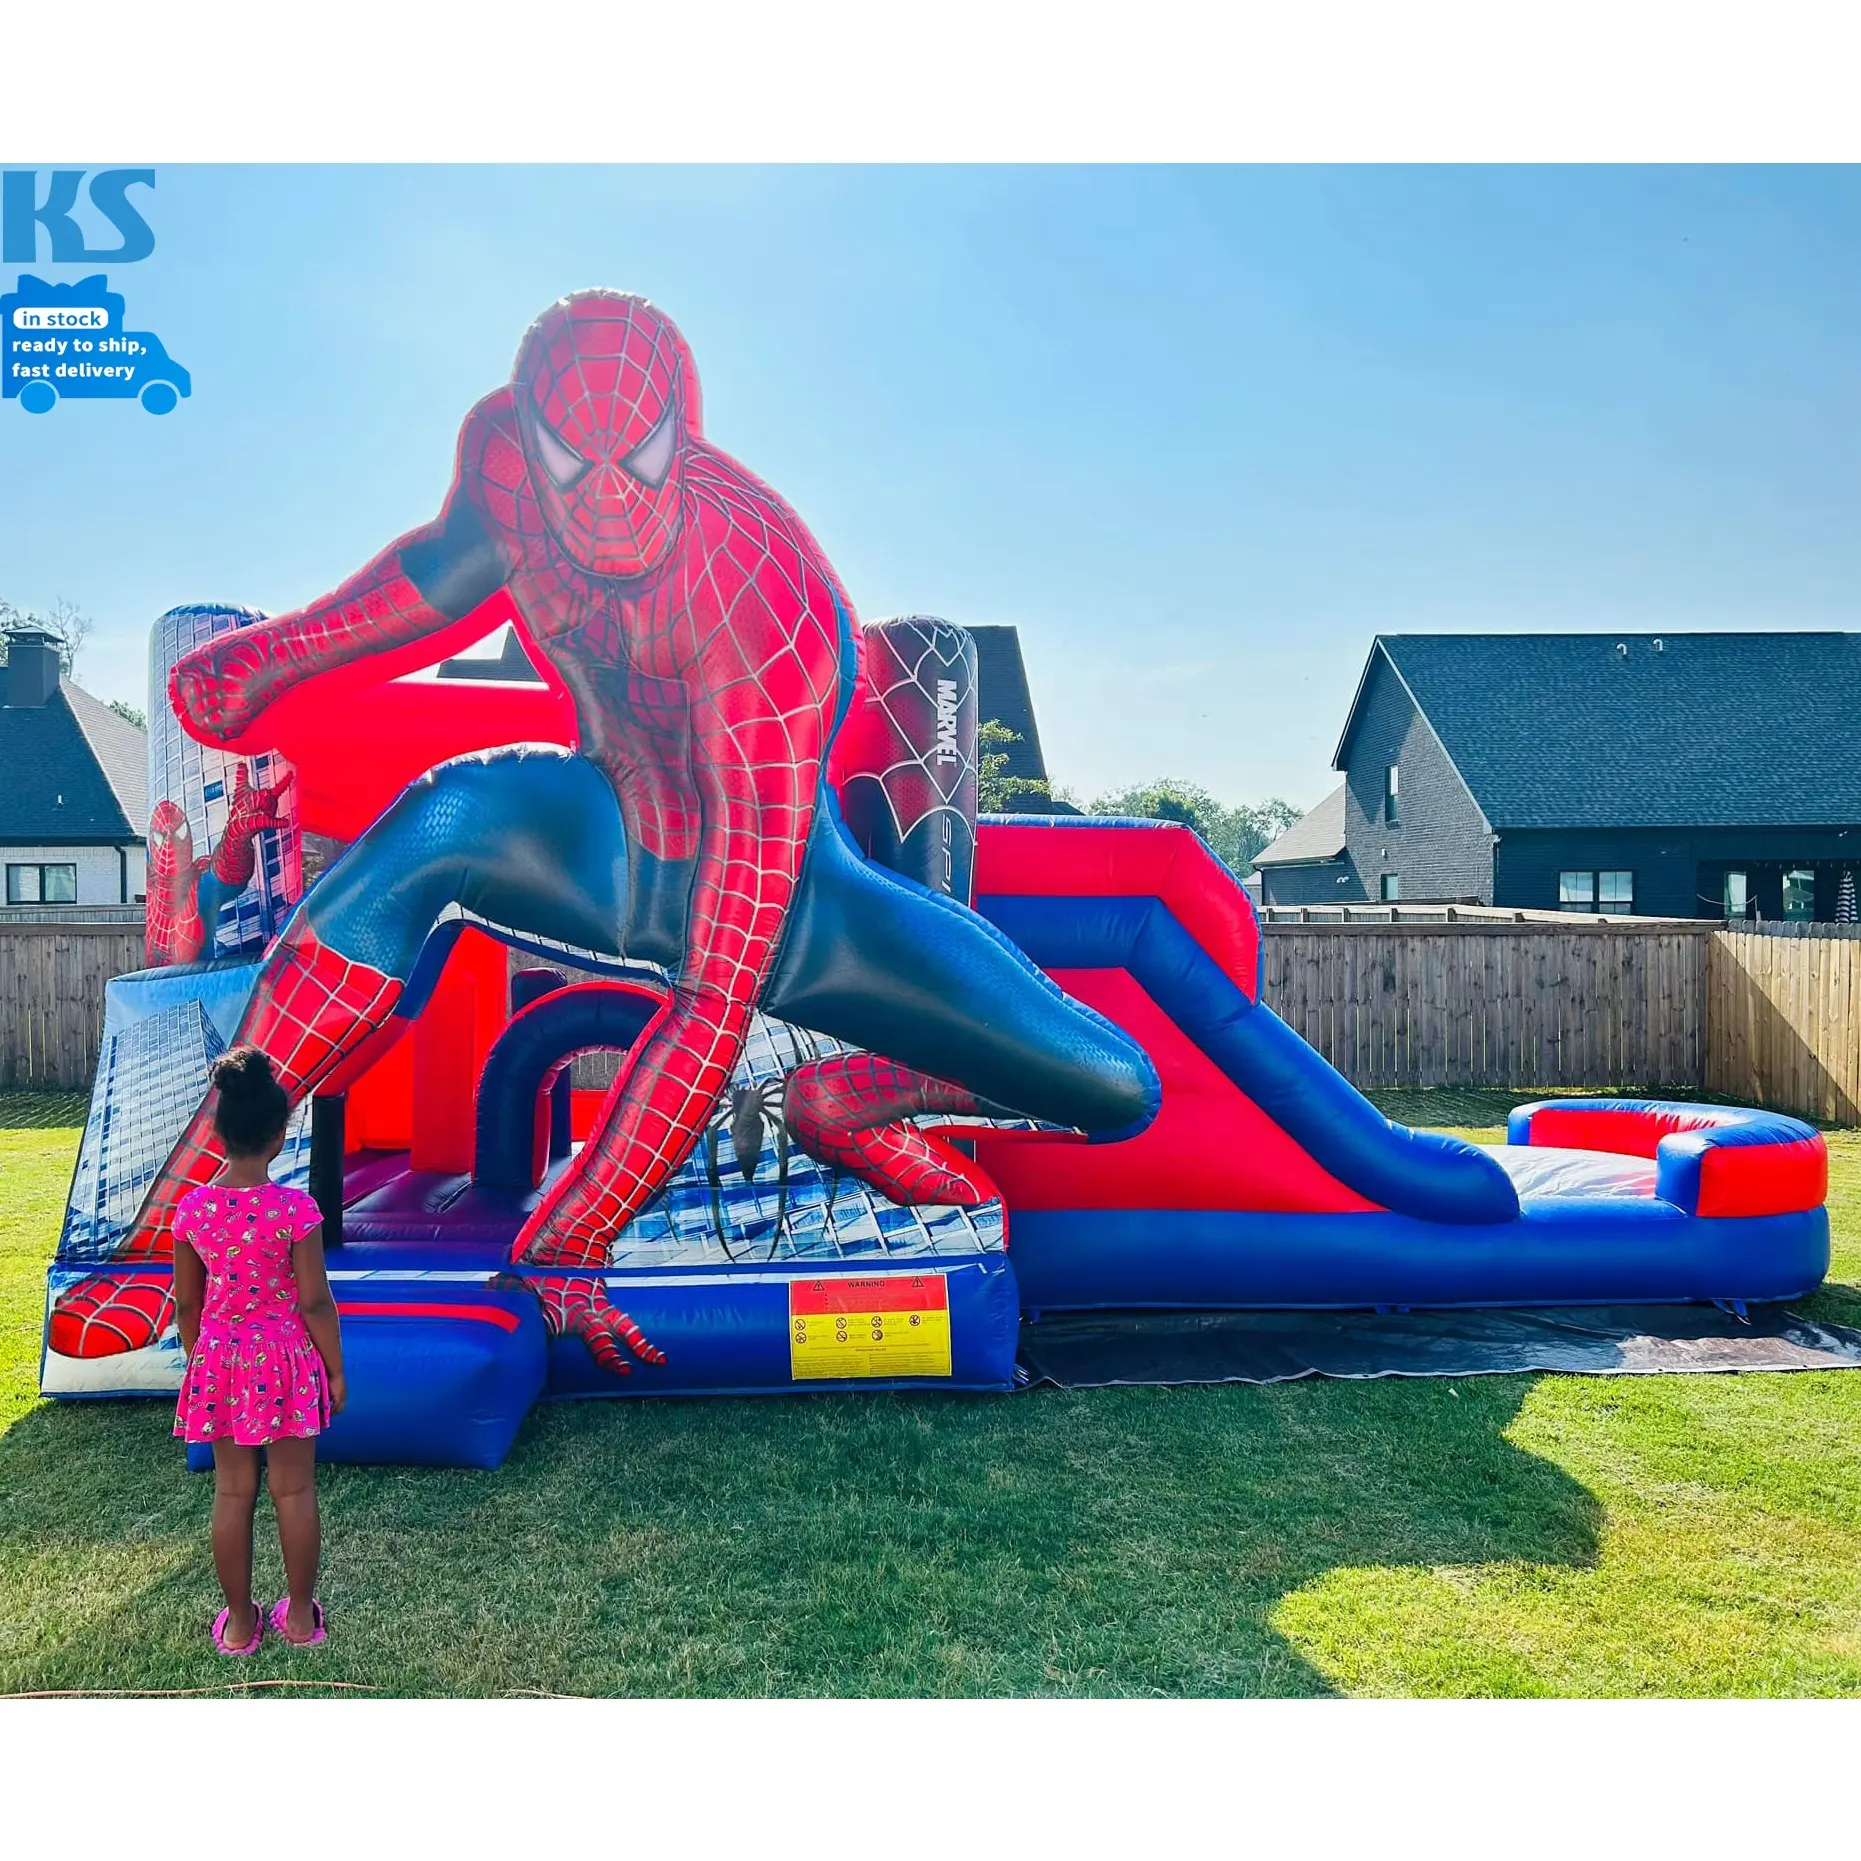 Comercial PVC Niños Inflable Spider-Man Bounce House Combo Jumping Castillo hinchable con tobogán para fiesta Alquiler Evento